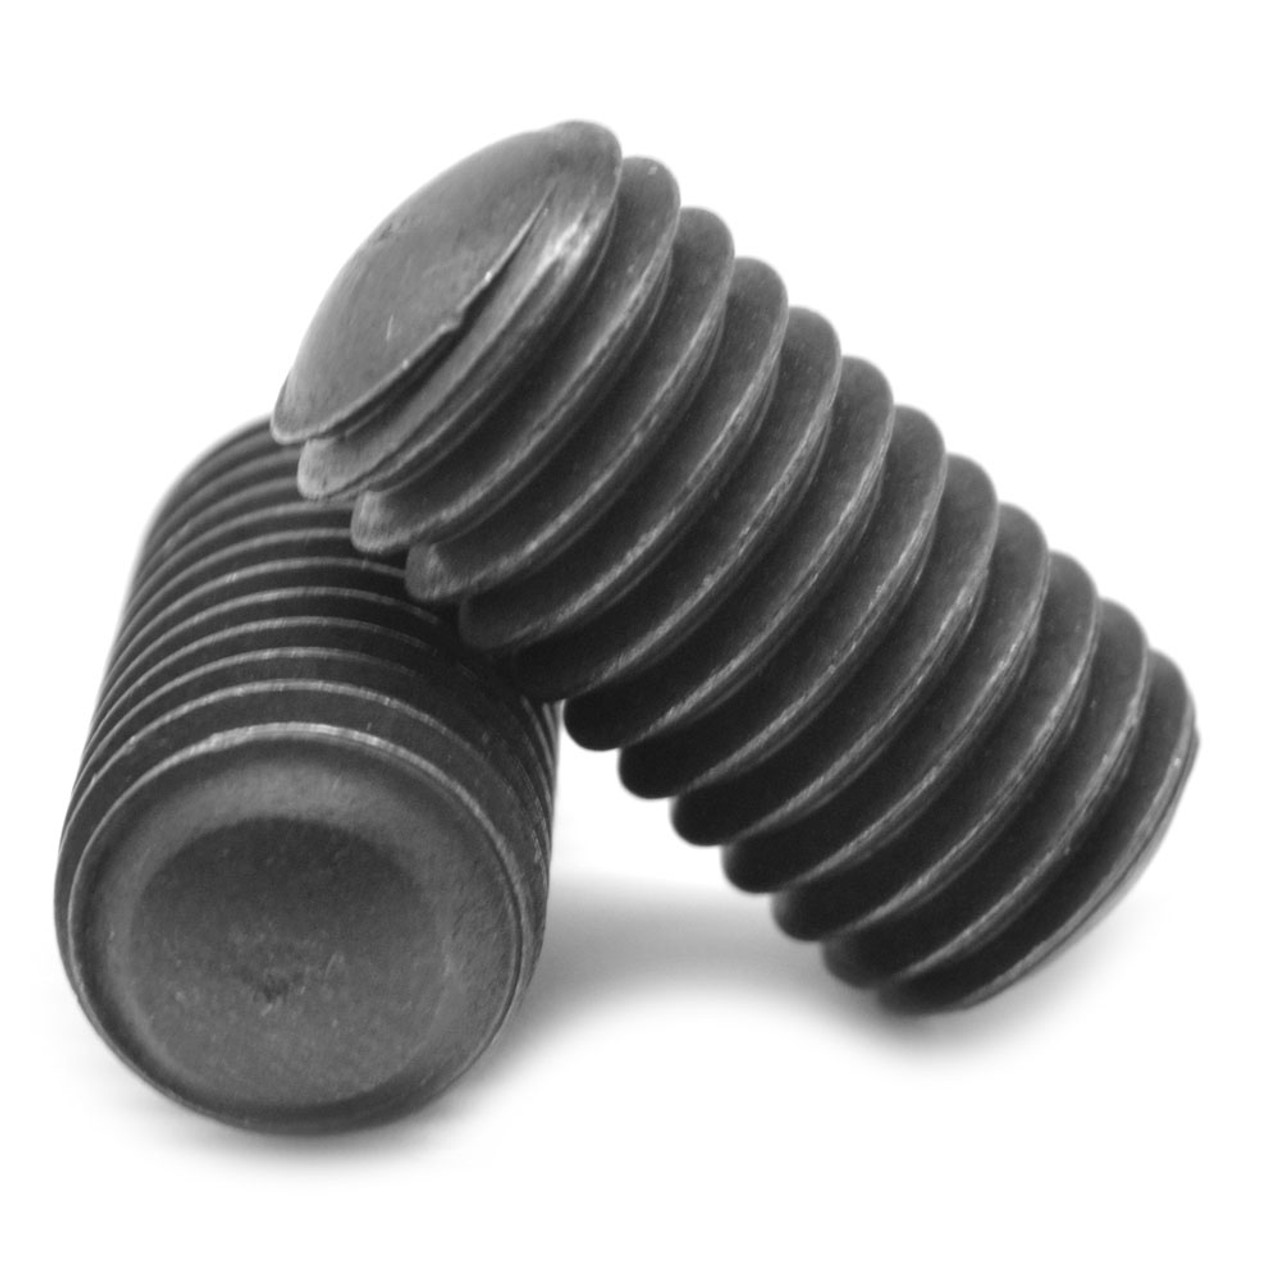 1/2"-13 x 2" Coarse Thread Socket Set Screw Oval Point Alloy Steel Black Oxide